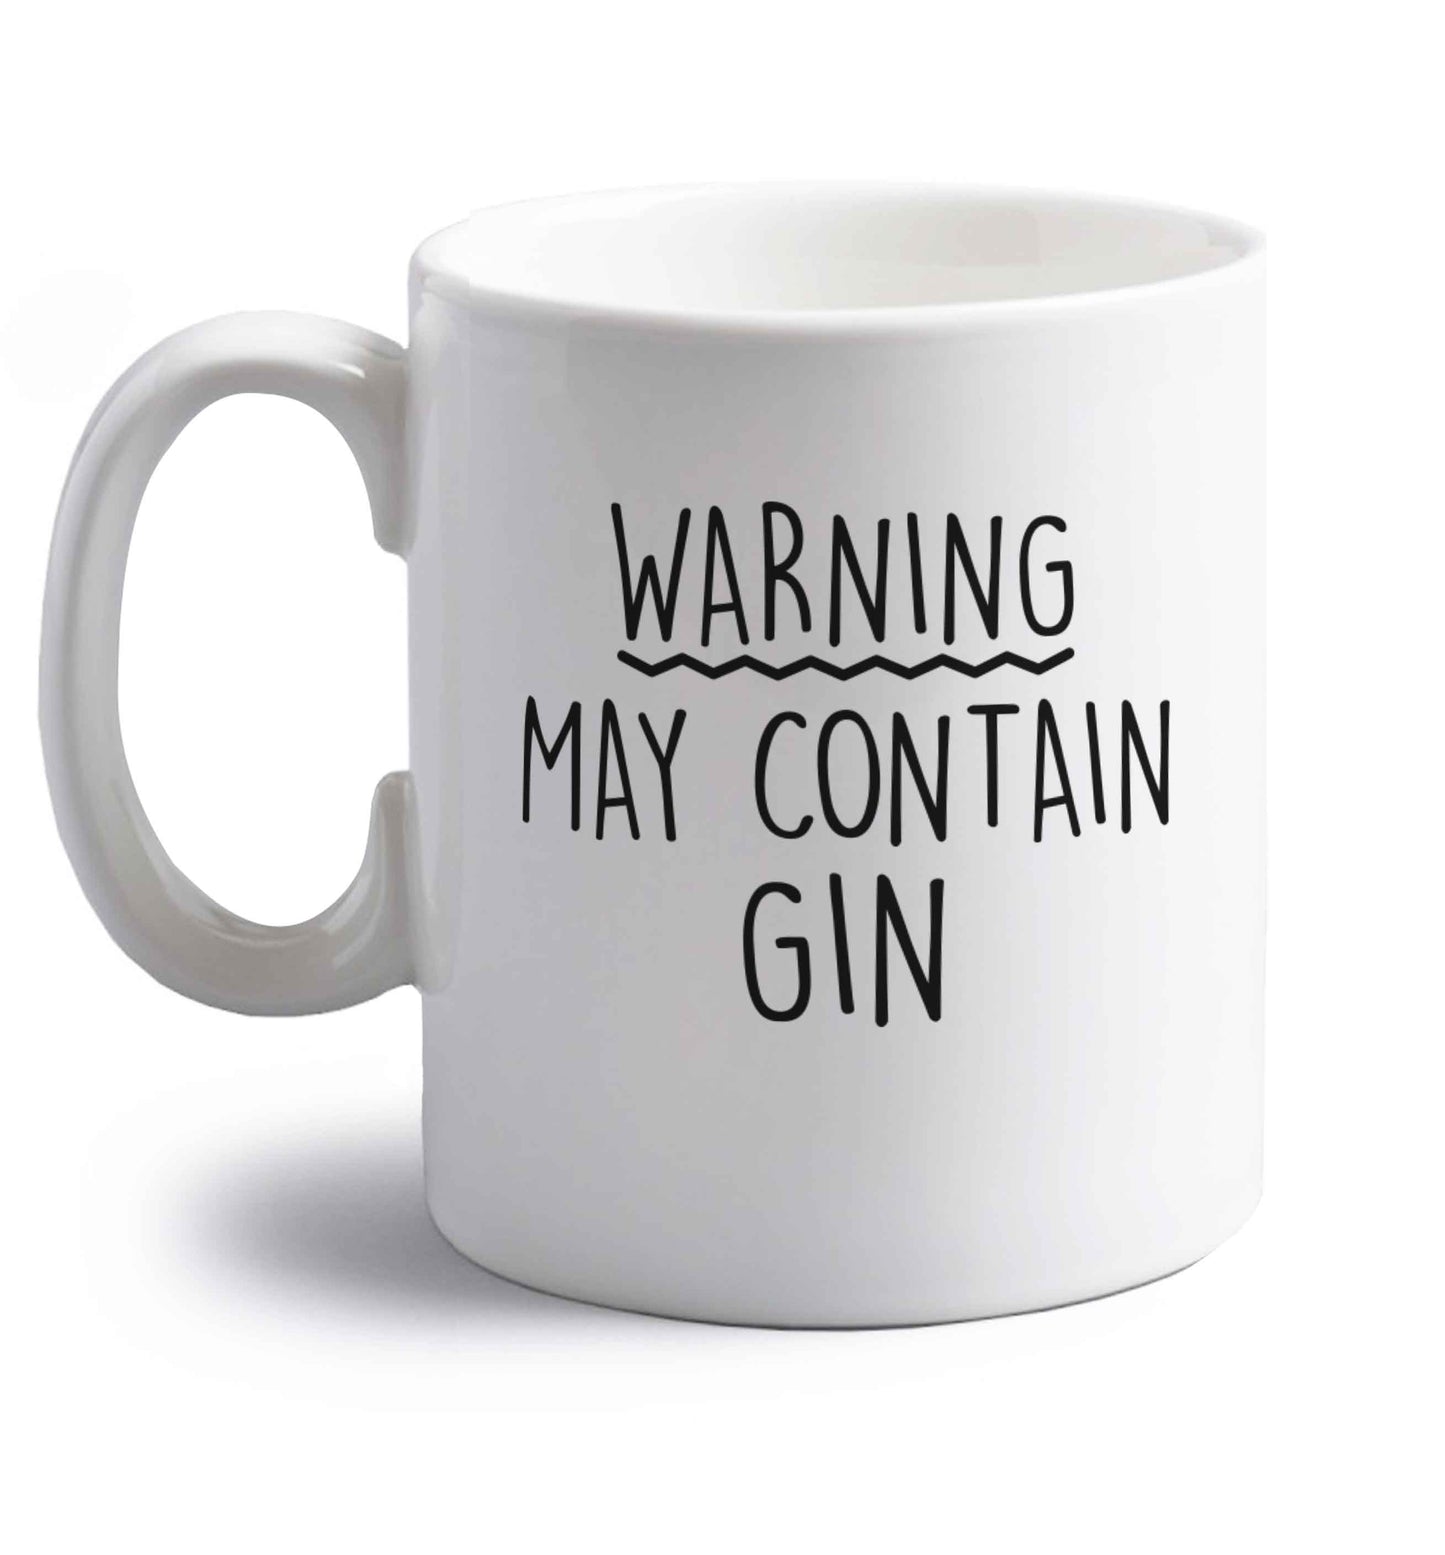 Warning may contain gin right handed white ceramic mug 